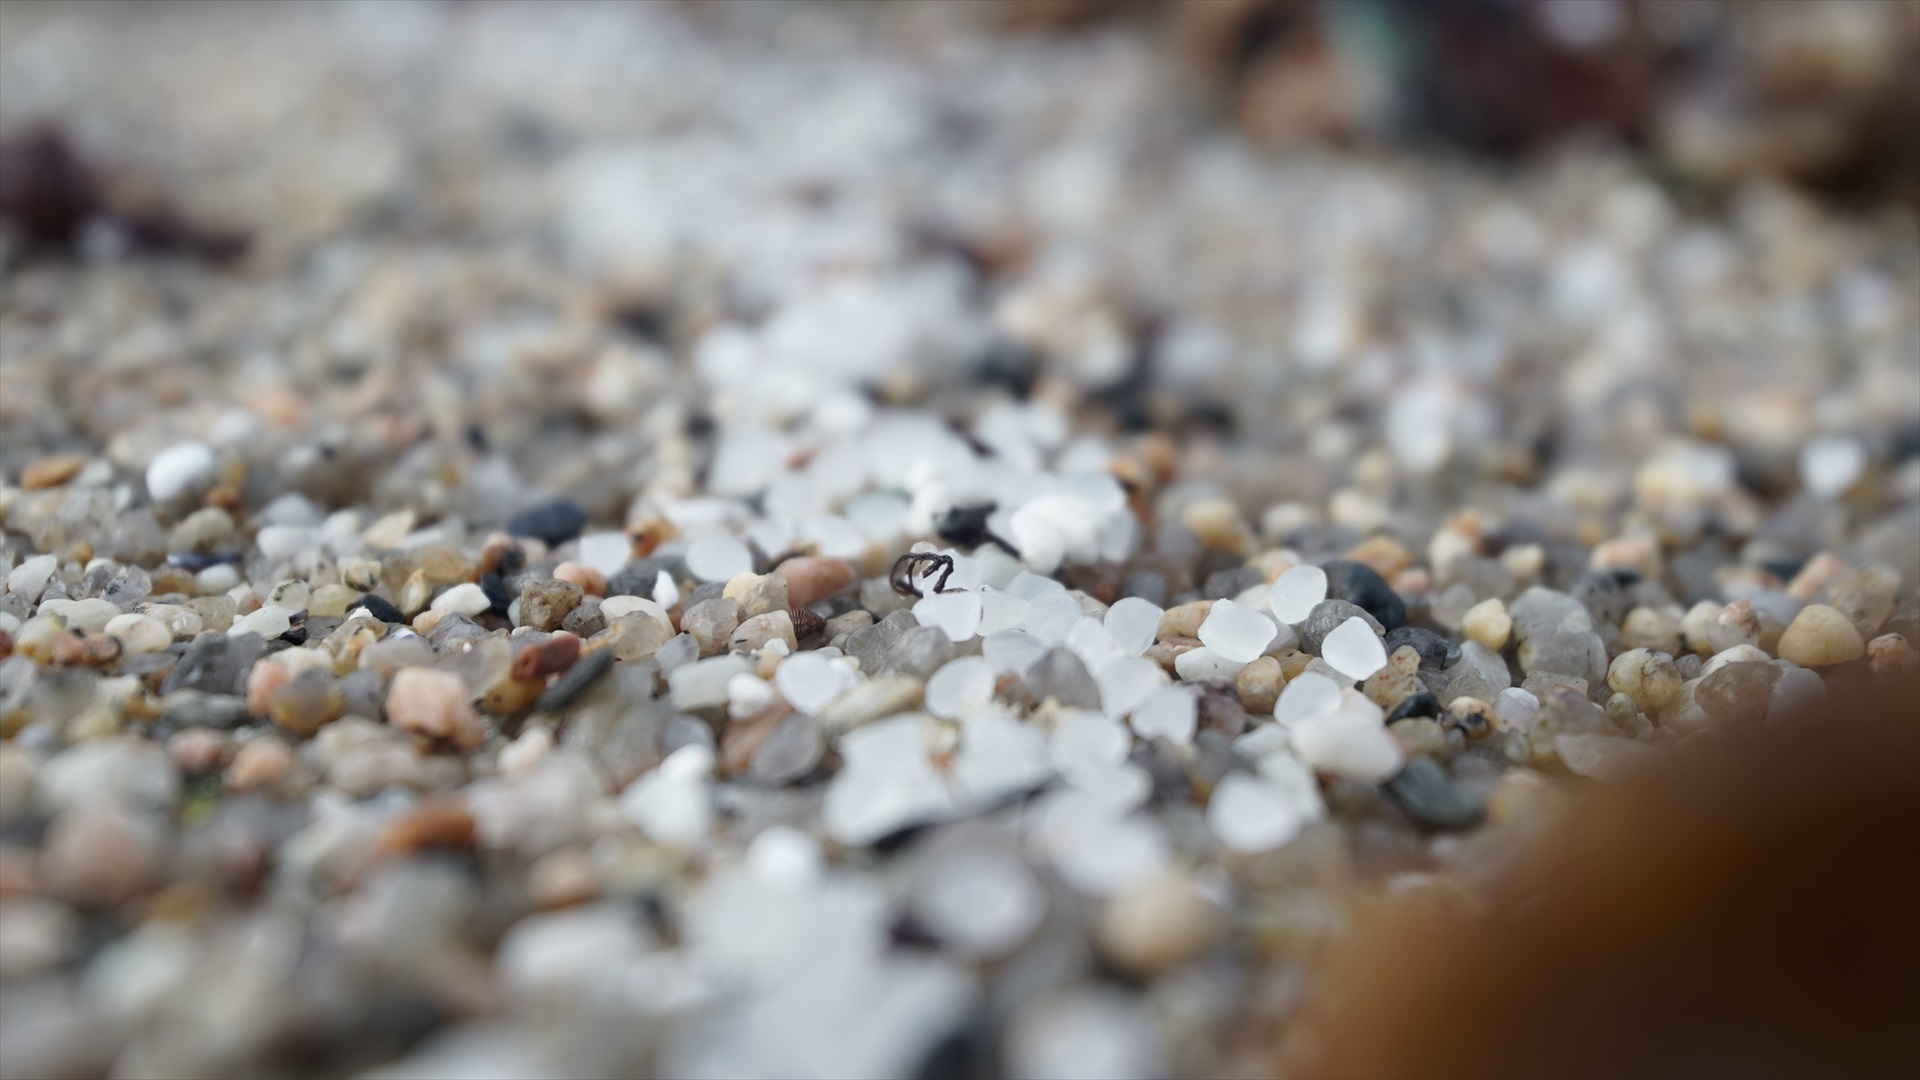 La Generalitat expedienta a empresas químicas por los pellets que llegan a las playas de Tarragona